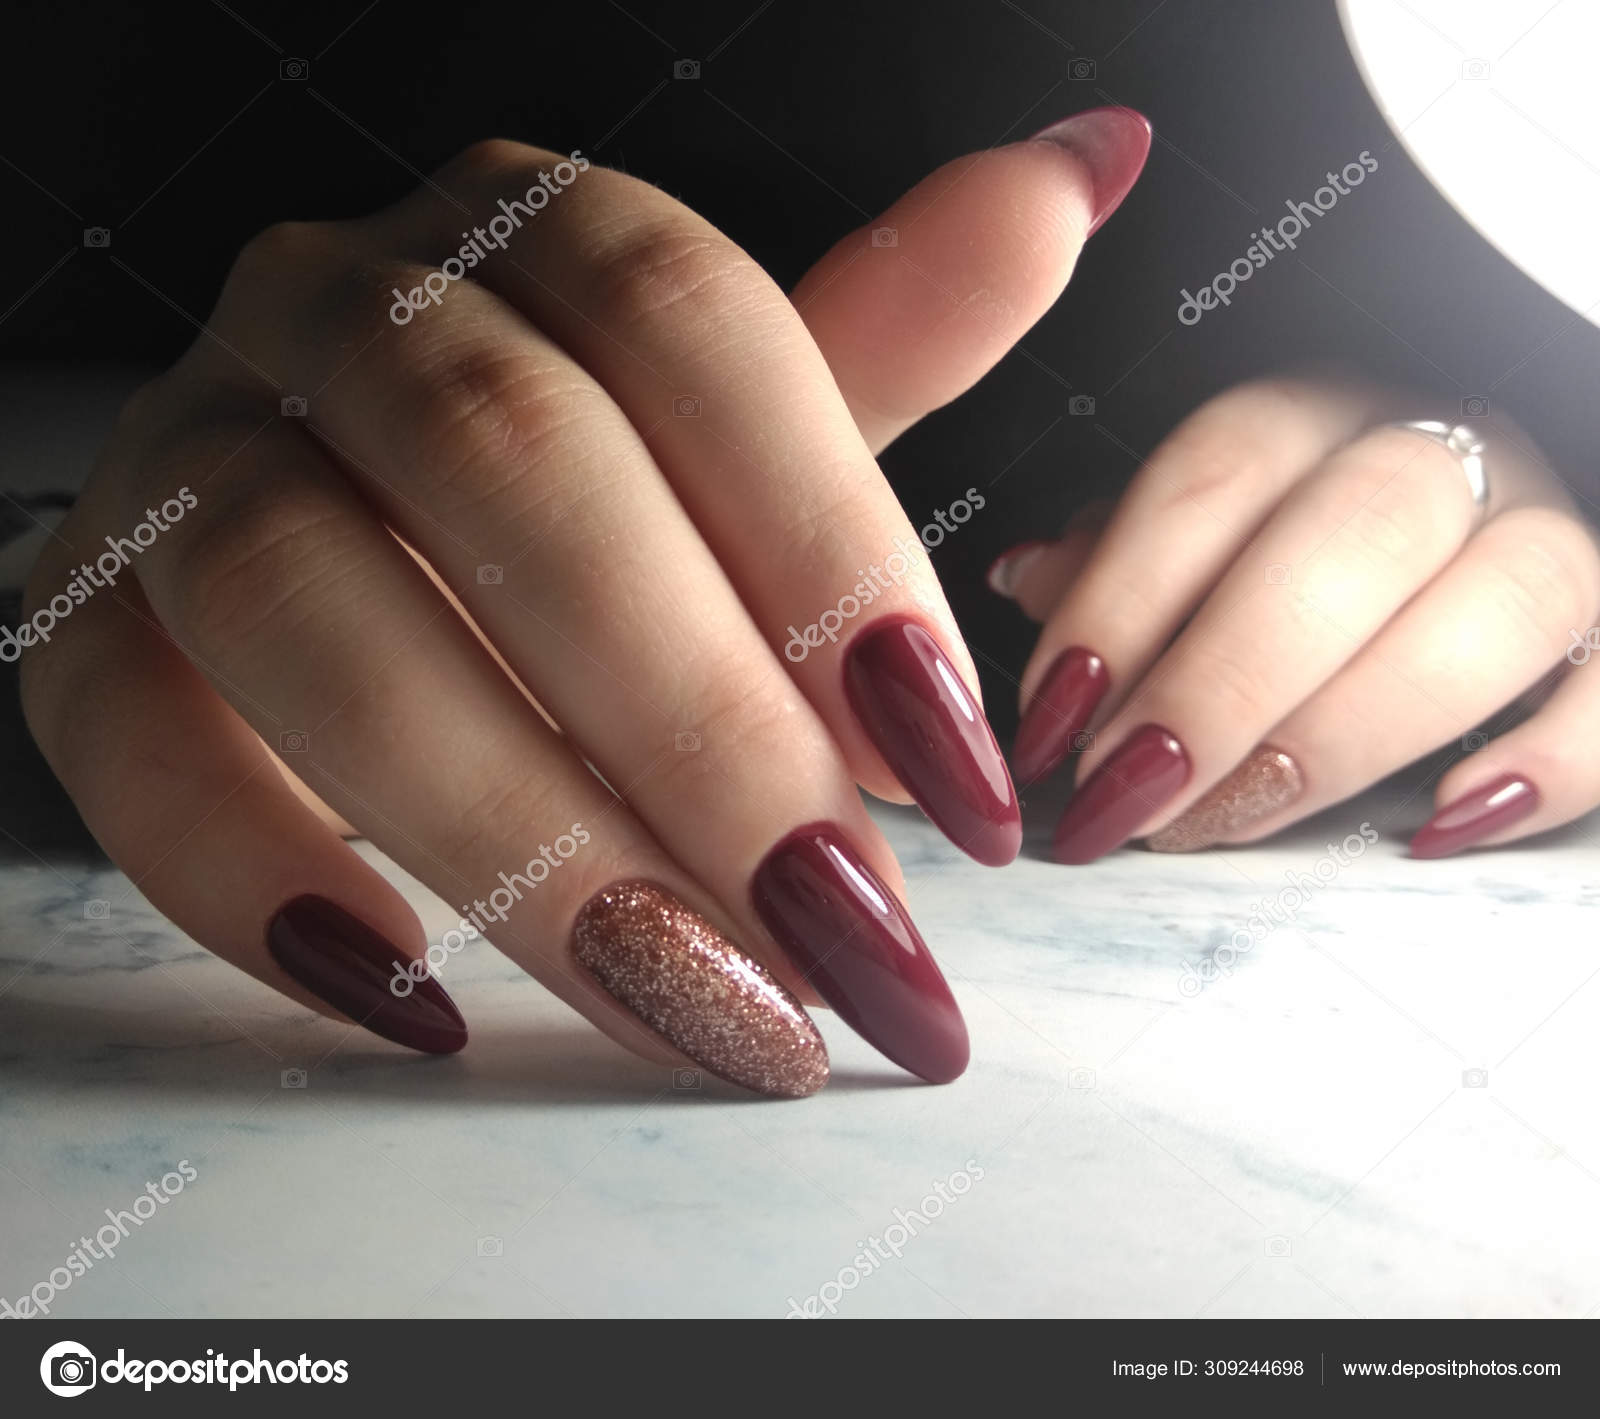 Burgundy gel nails | Shellac nail designs, Shellac nails, Winter nails gel